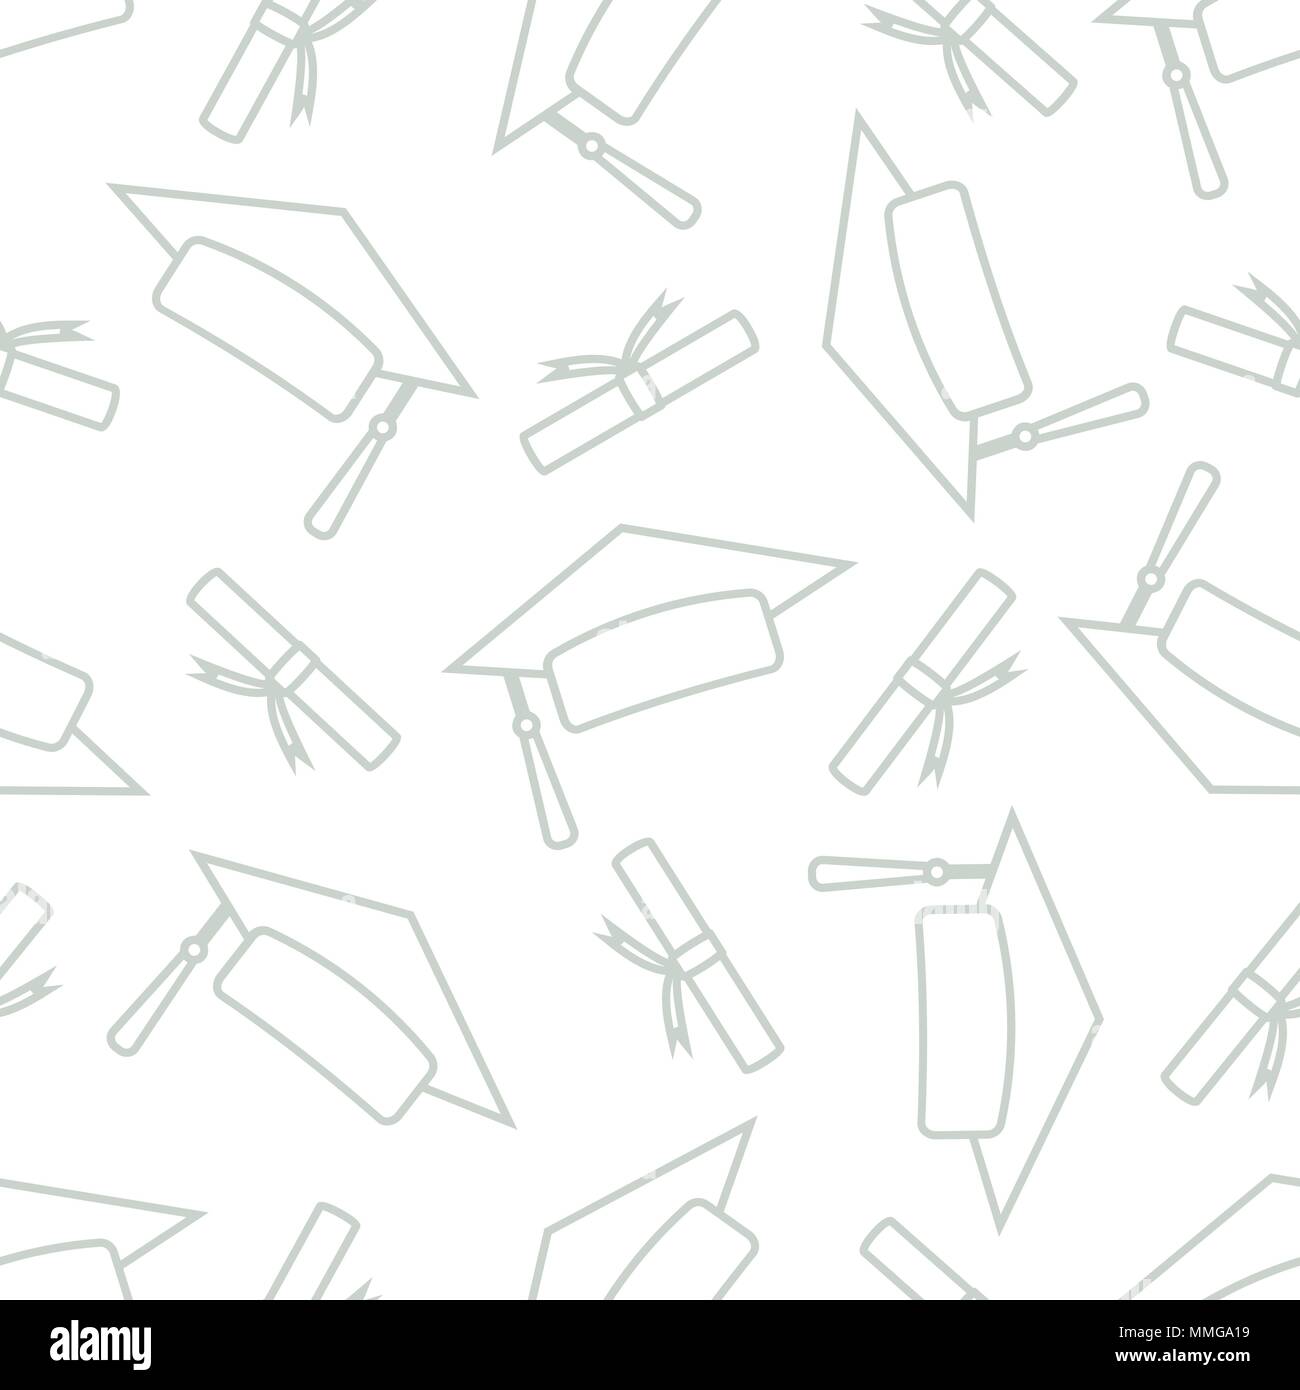 Absolvent Kappen mit Absolvent Papier in grauen Umrisse random auf weißem Hintergrund. Nahtlose Muster Hintergrund Design für Schule und Studium der Vektor i Stock Vektor